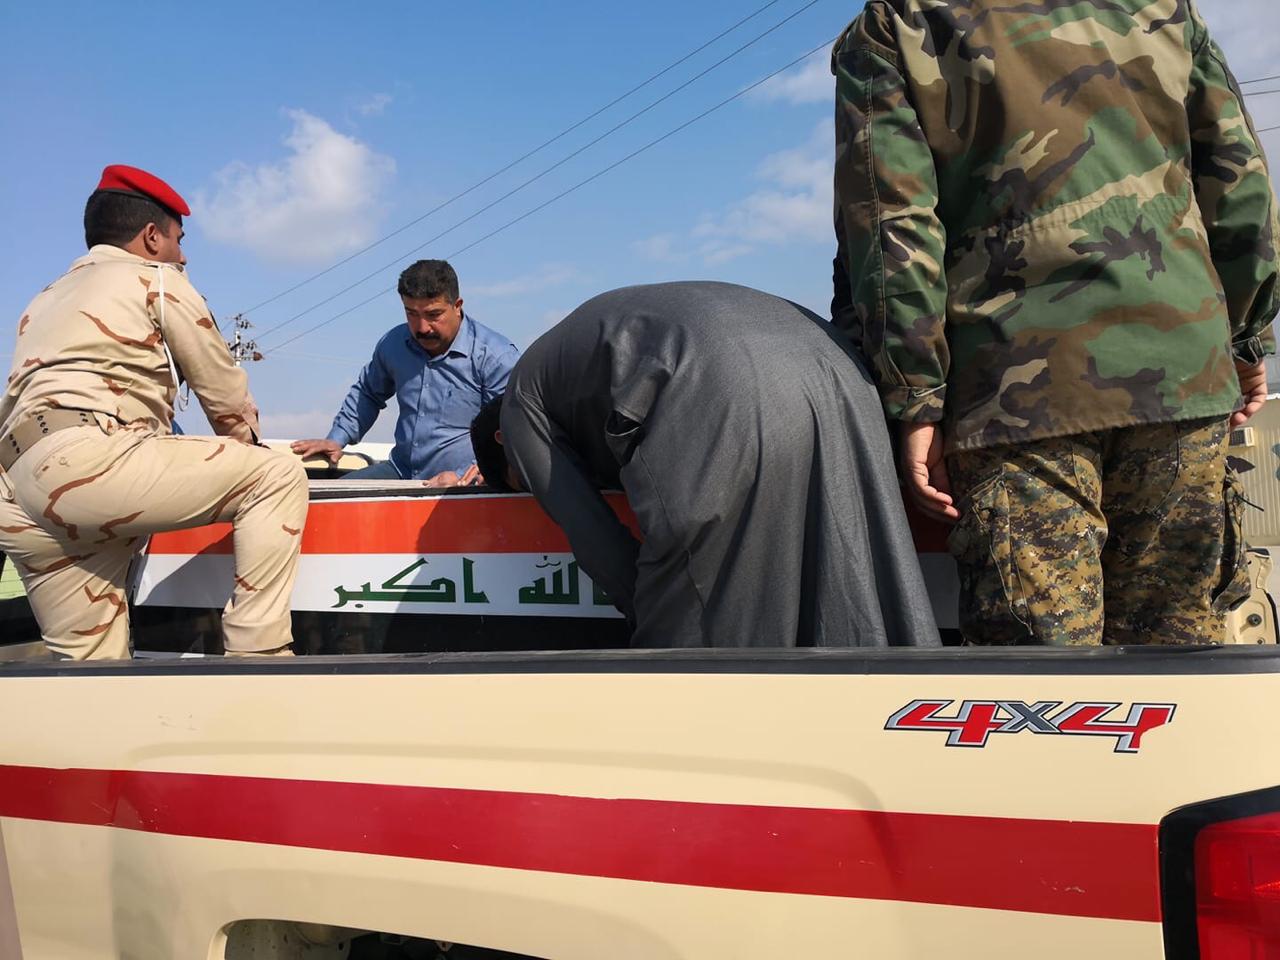 جندي عراقي بالفرقة السادسة يقتل رفاقه الخمسة في وحدتهم بابي غريب ببغداد